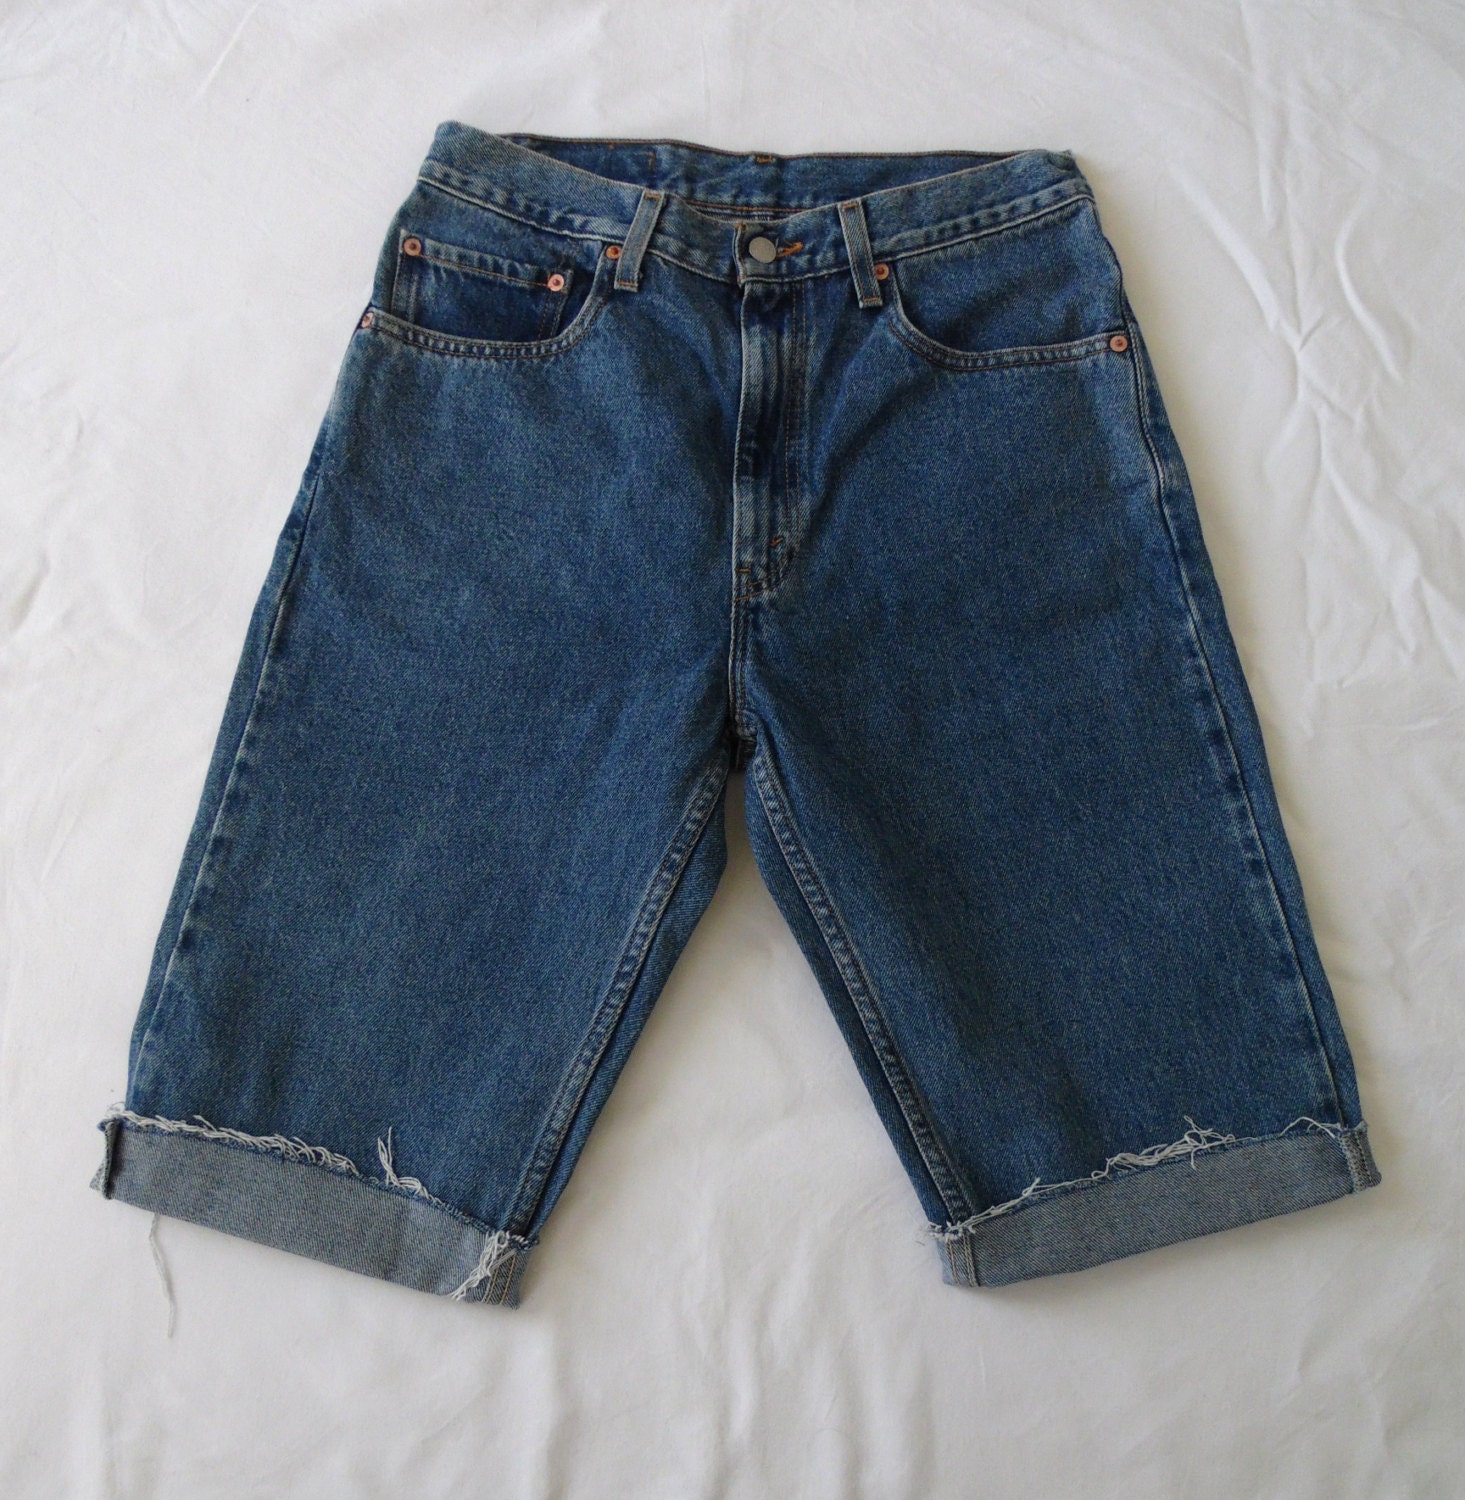 Mens Levis shorts vintage 505 blue denim jean cut off long